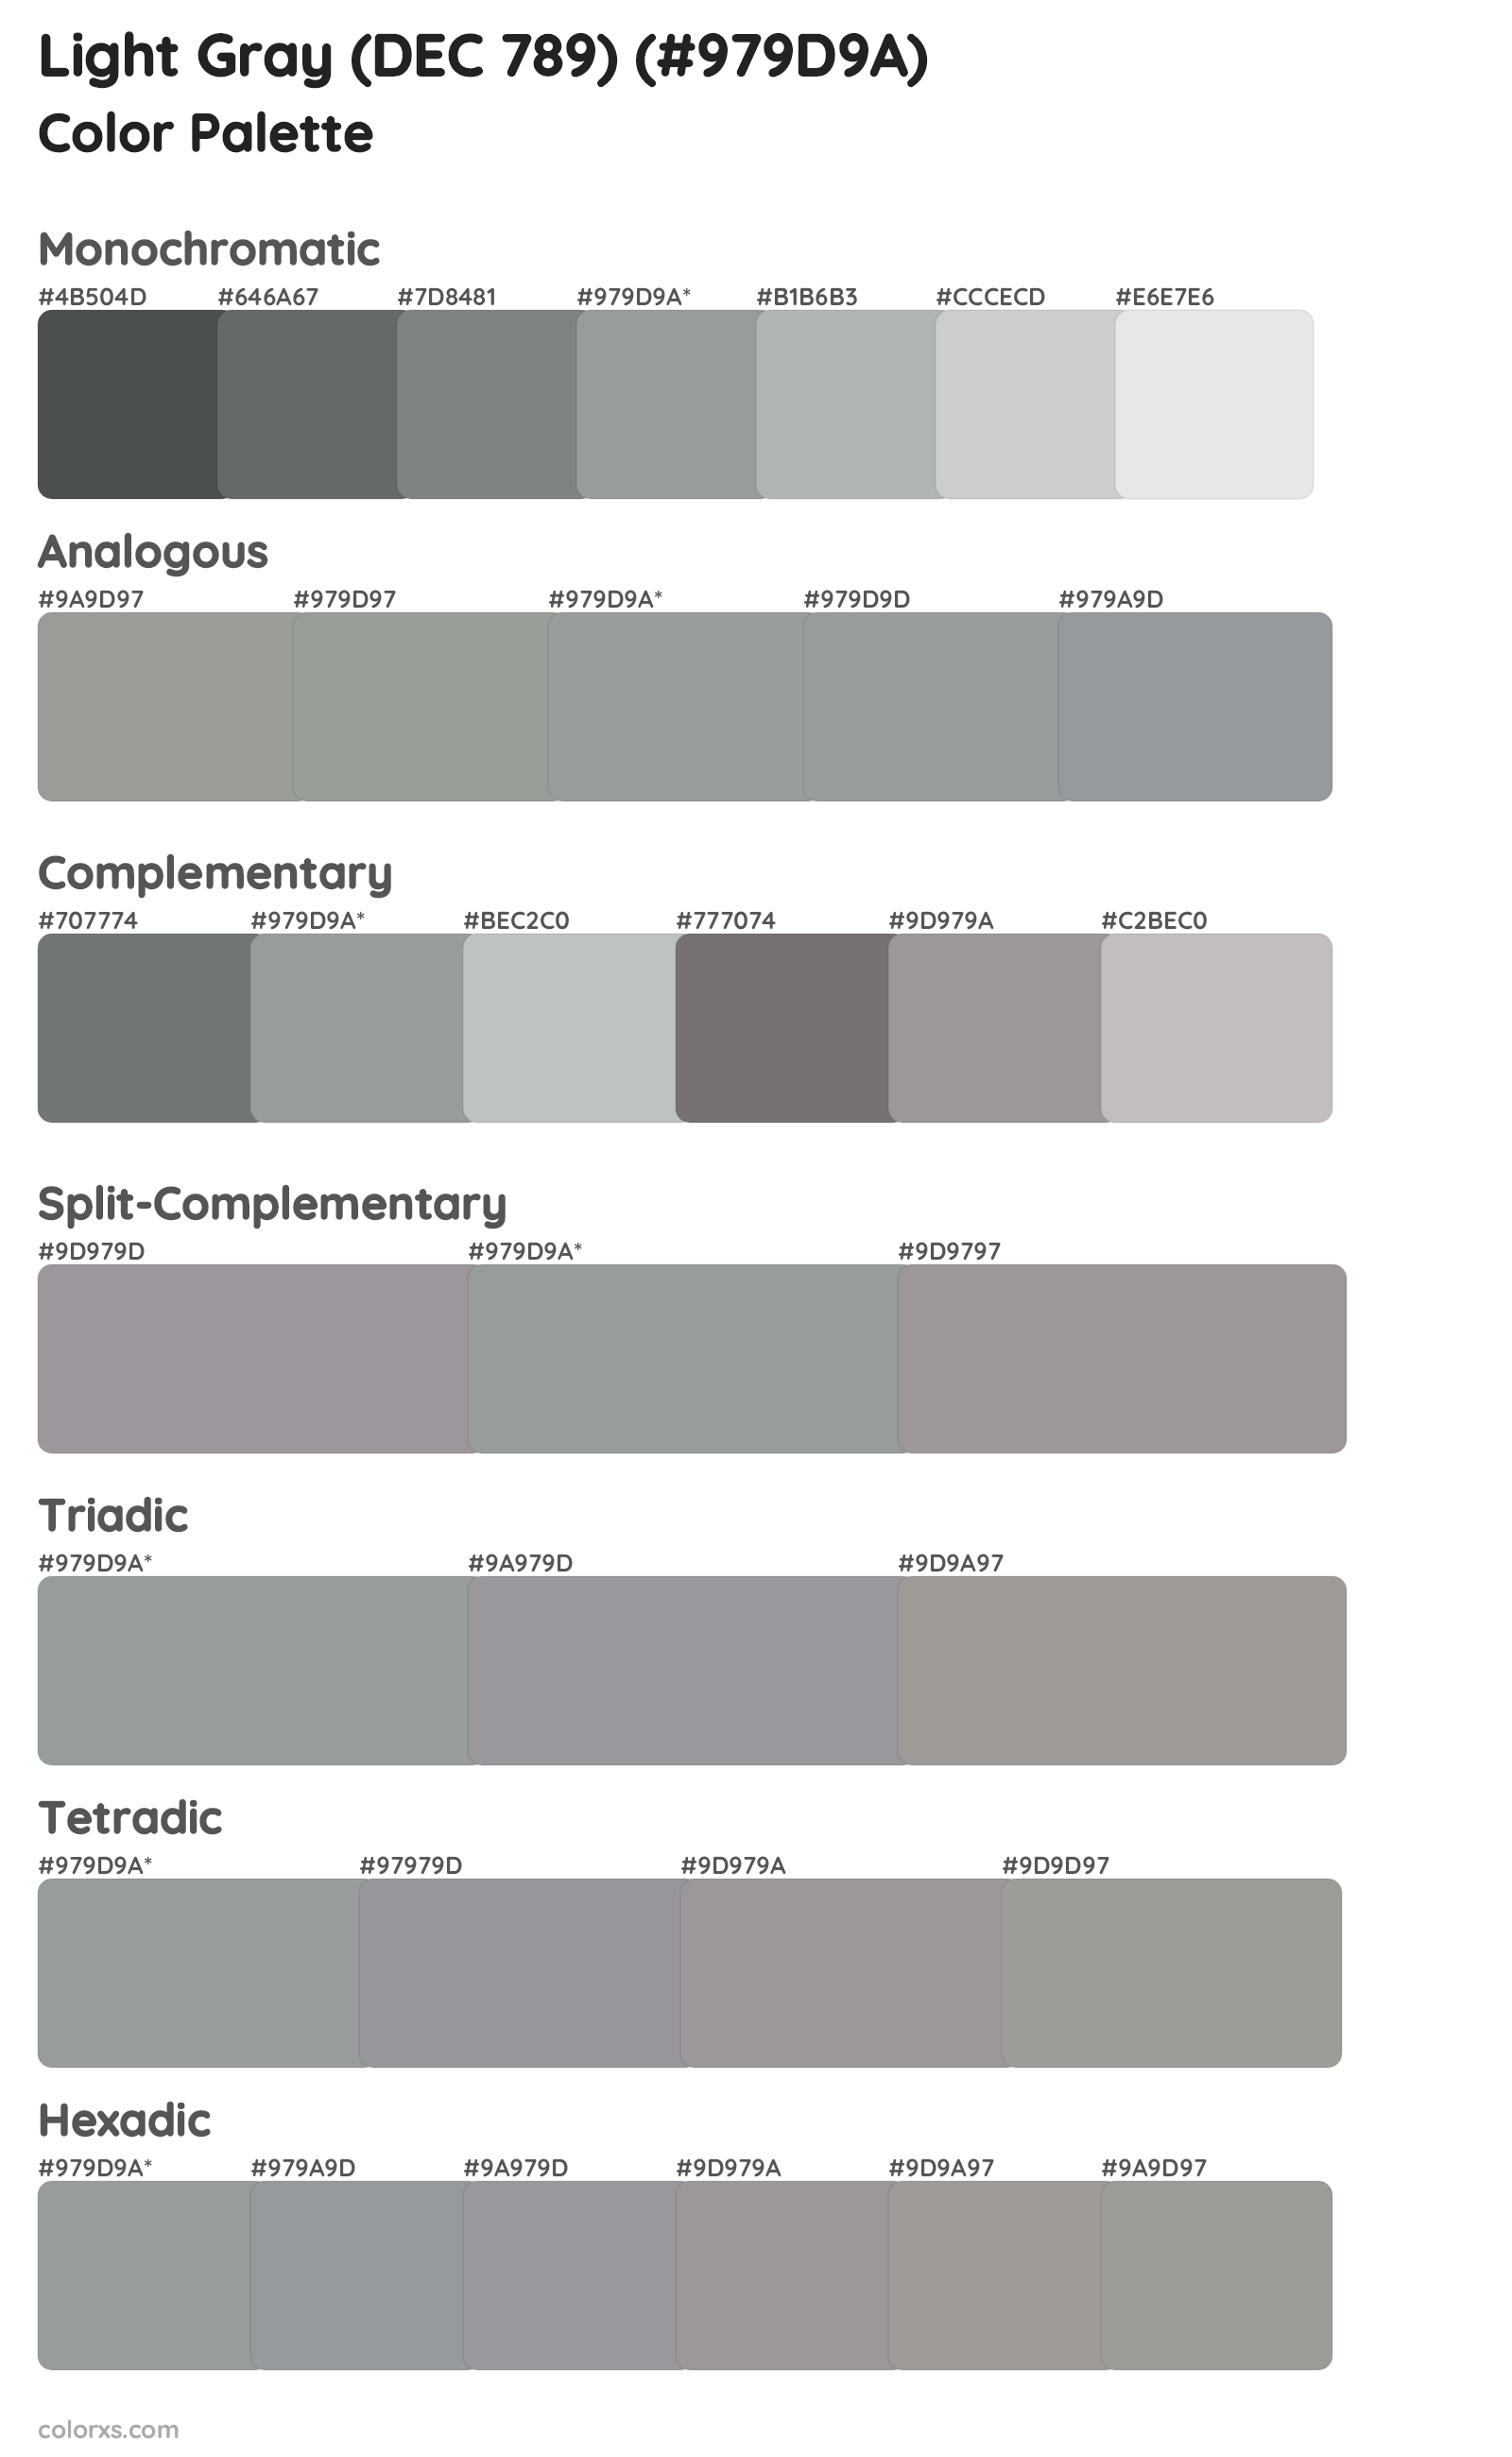 Light Gray (DEC 789) Color Scheme Palettes